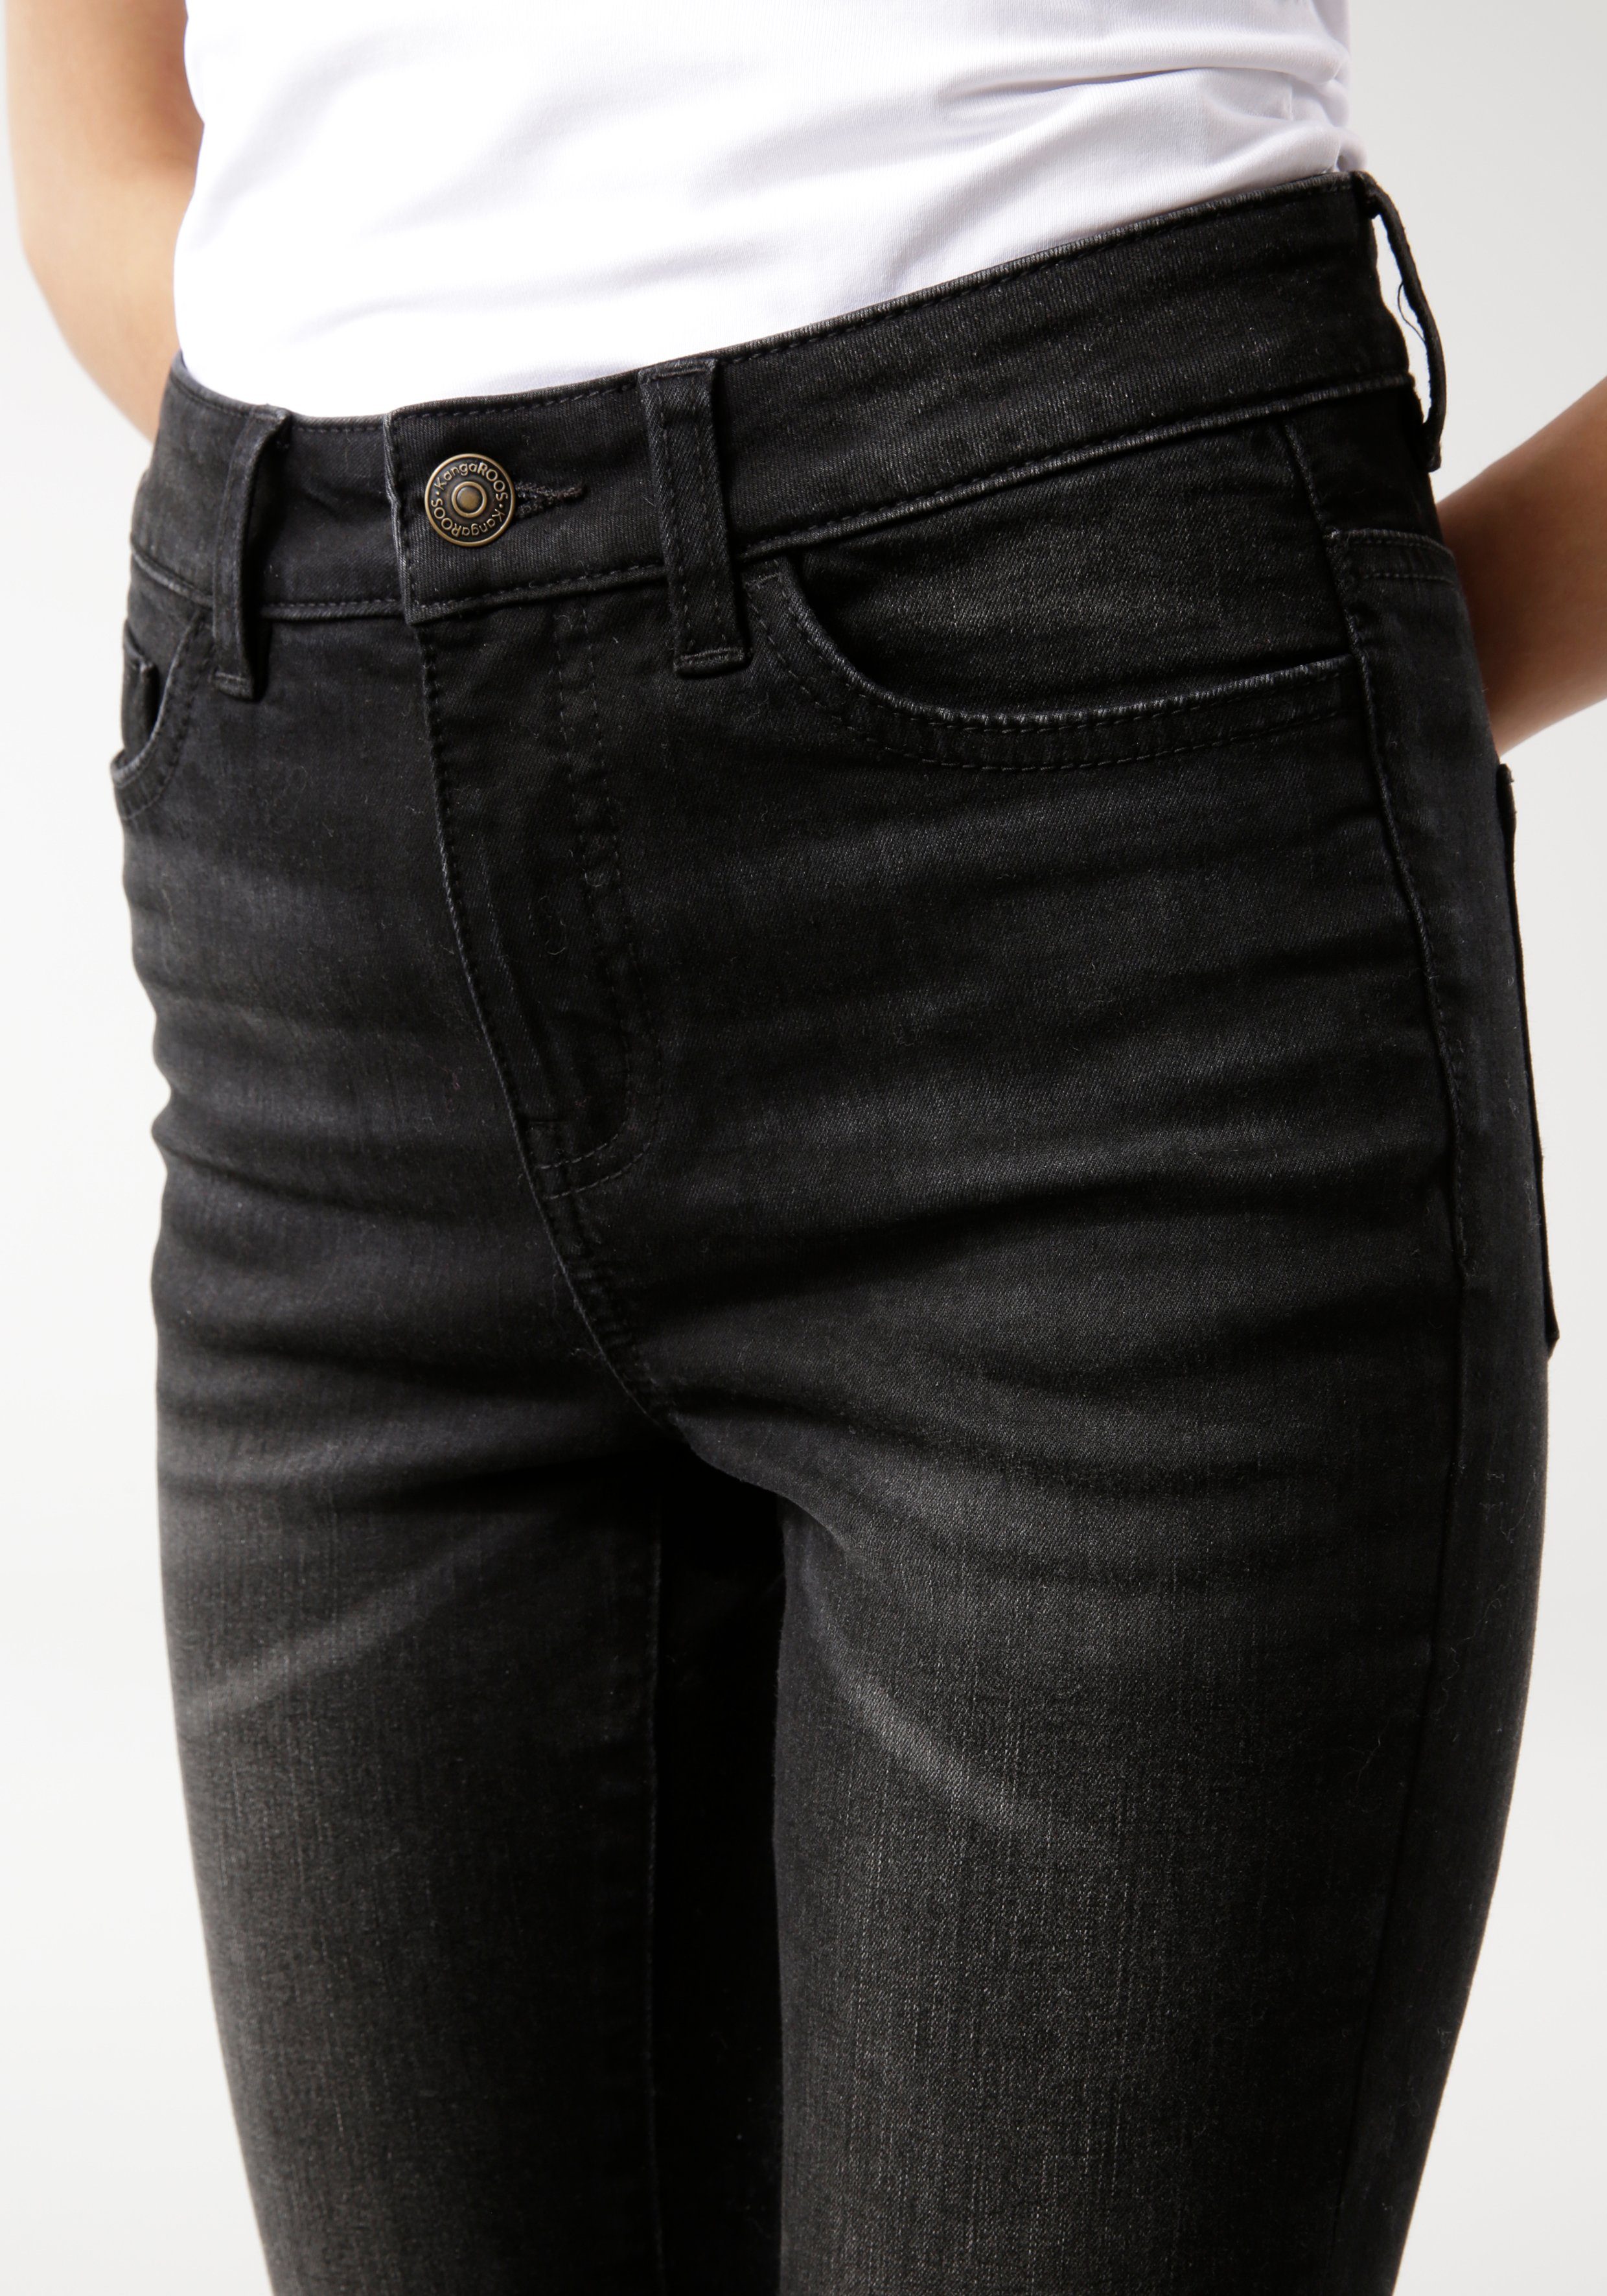 KangaROOS 5-Pocket-Jeans SUPER SKINNY HIGH black-used RISE used-Effekt mit